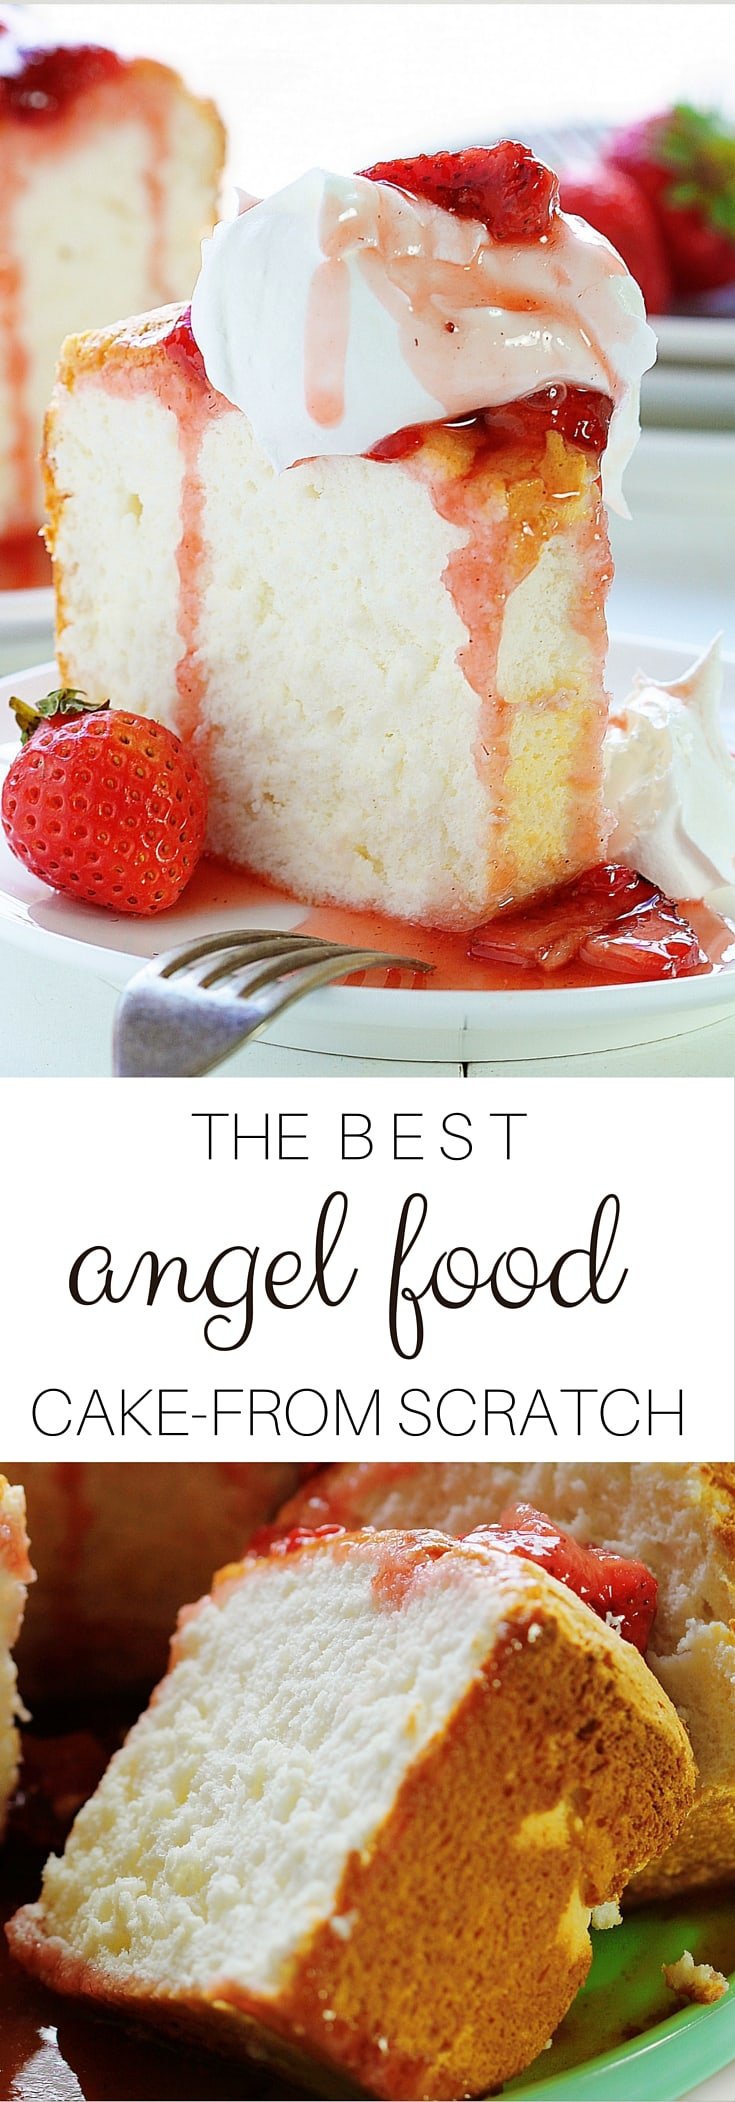 自制的天使蛋糕上的烤草莓会让你大吃一惊的!